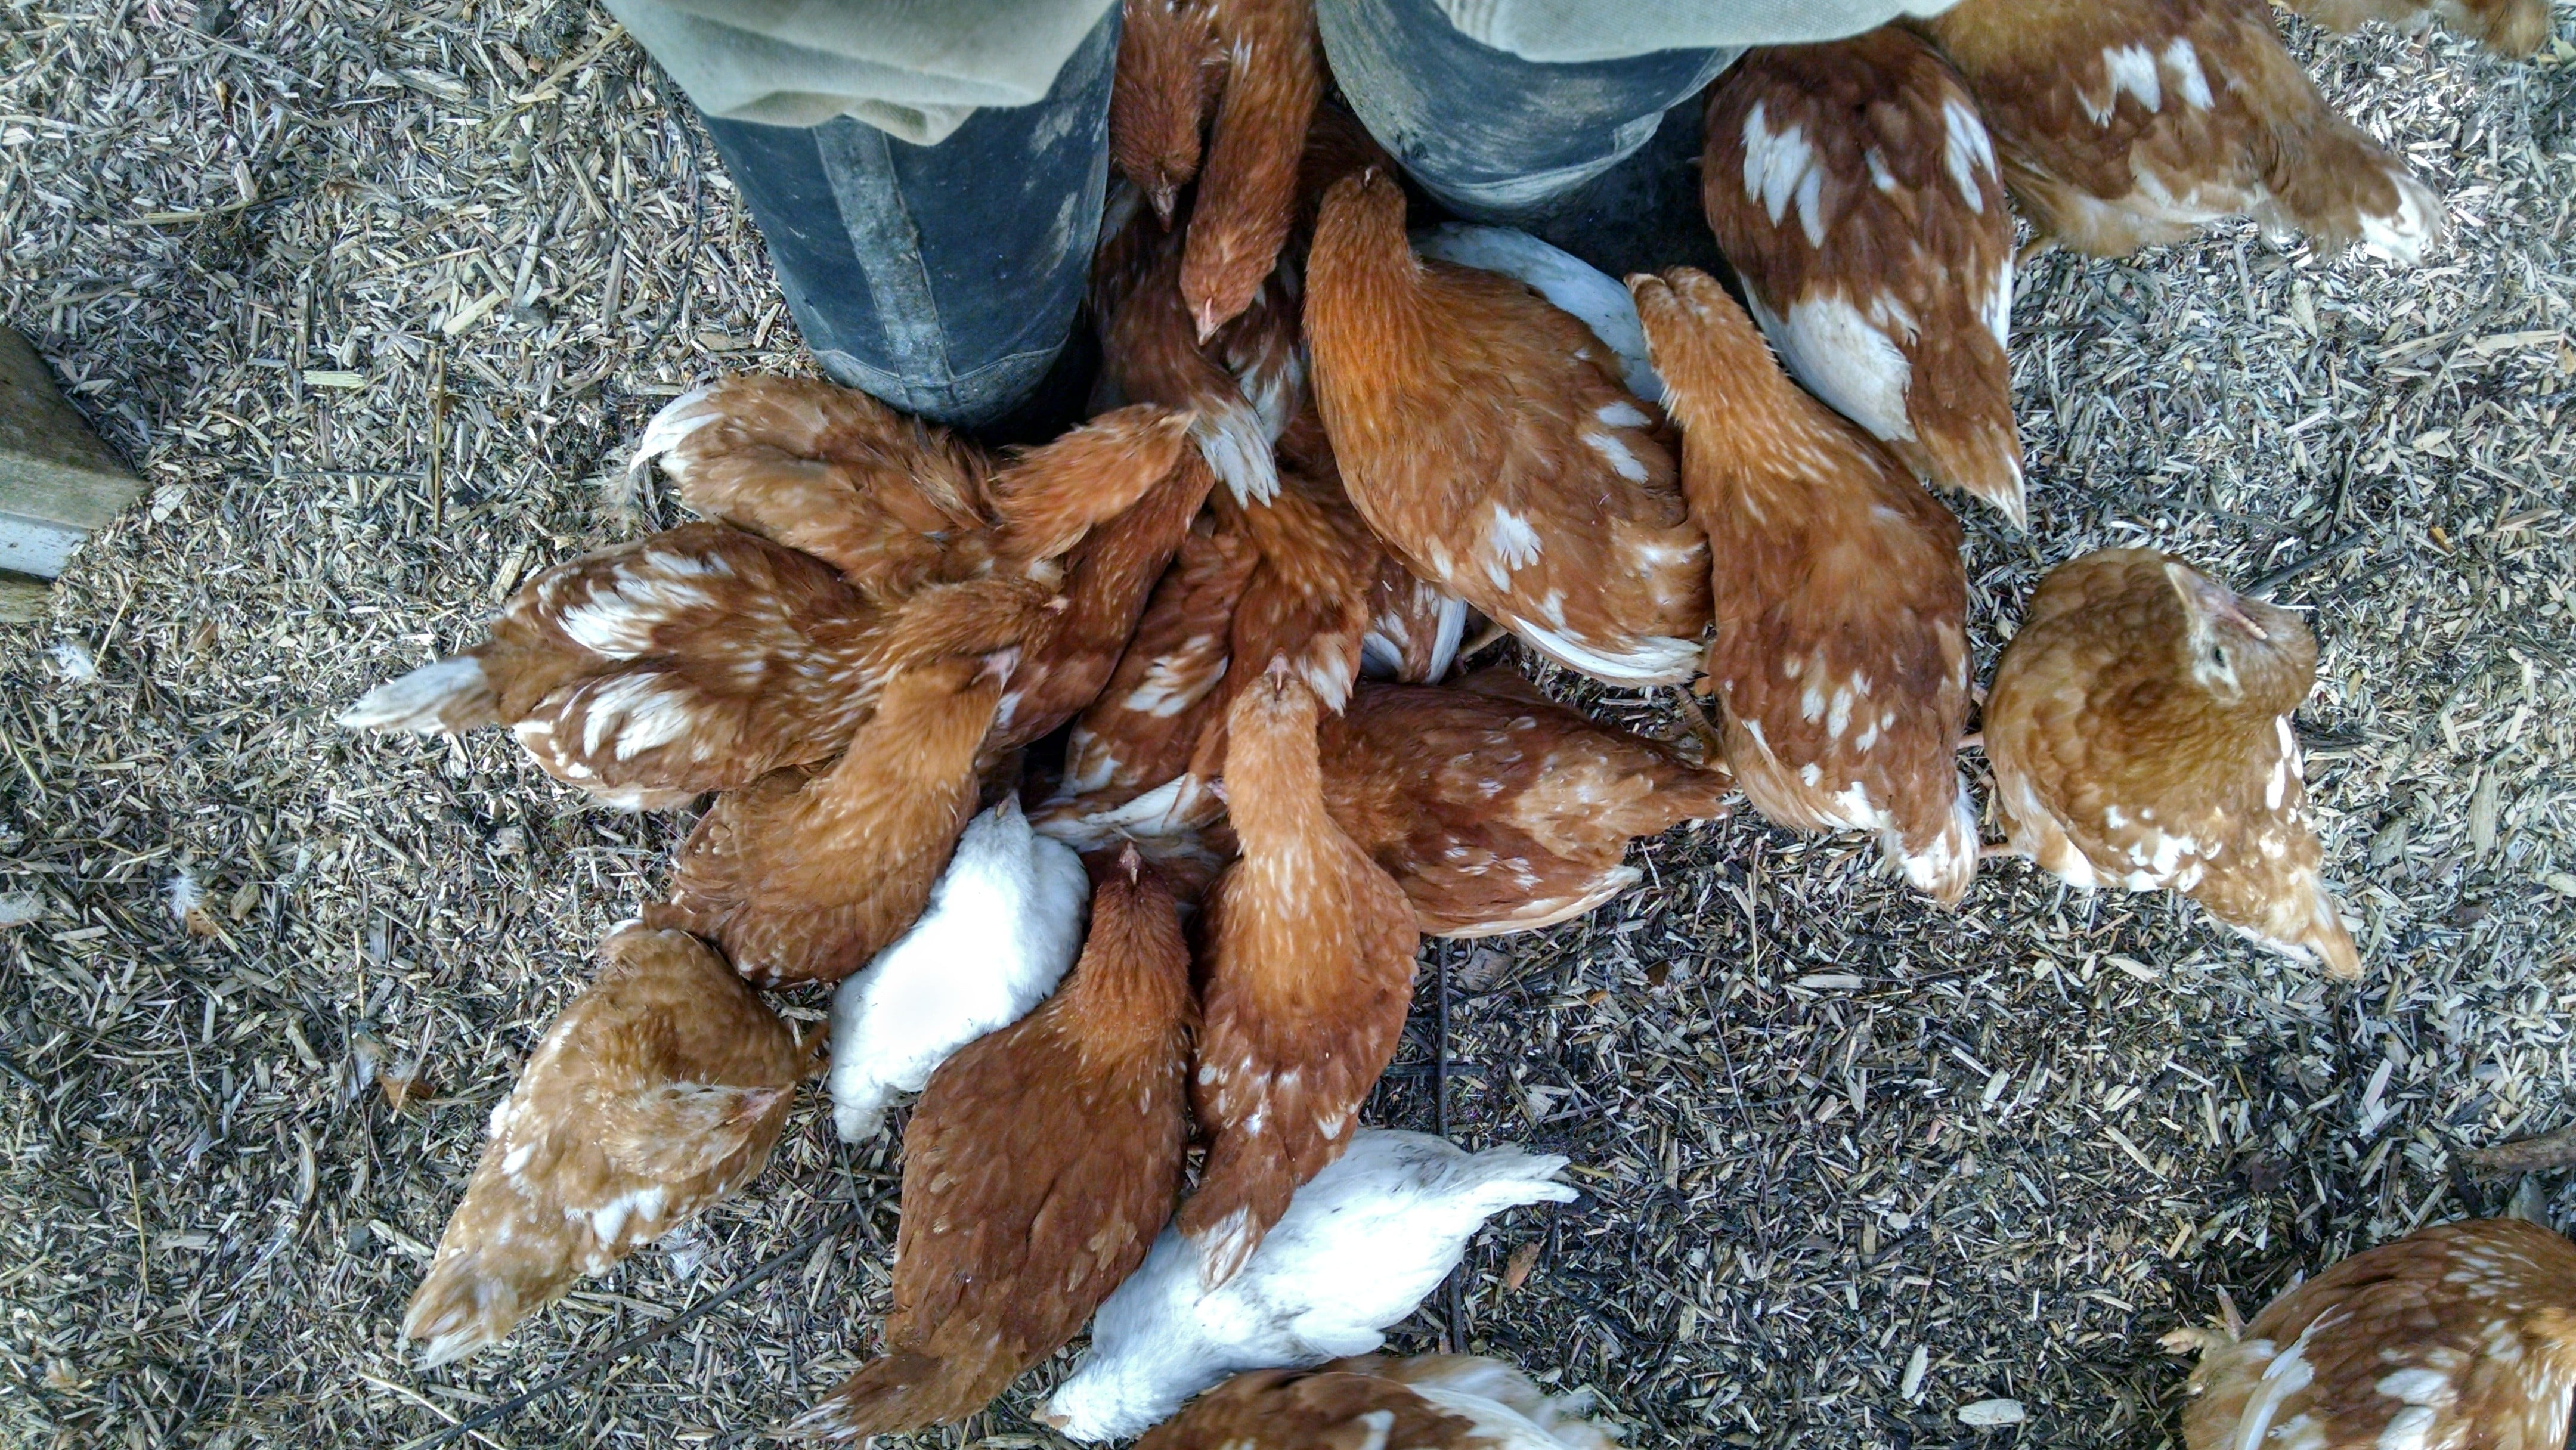 Chicks - Underfoot